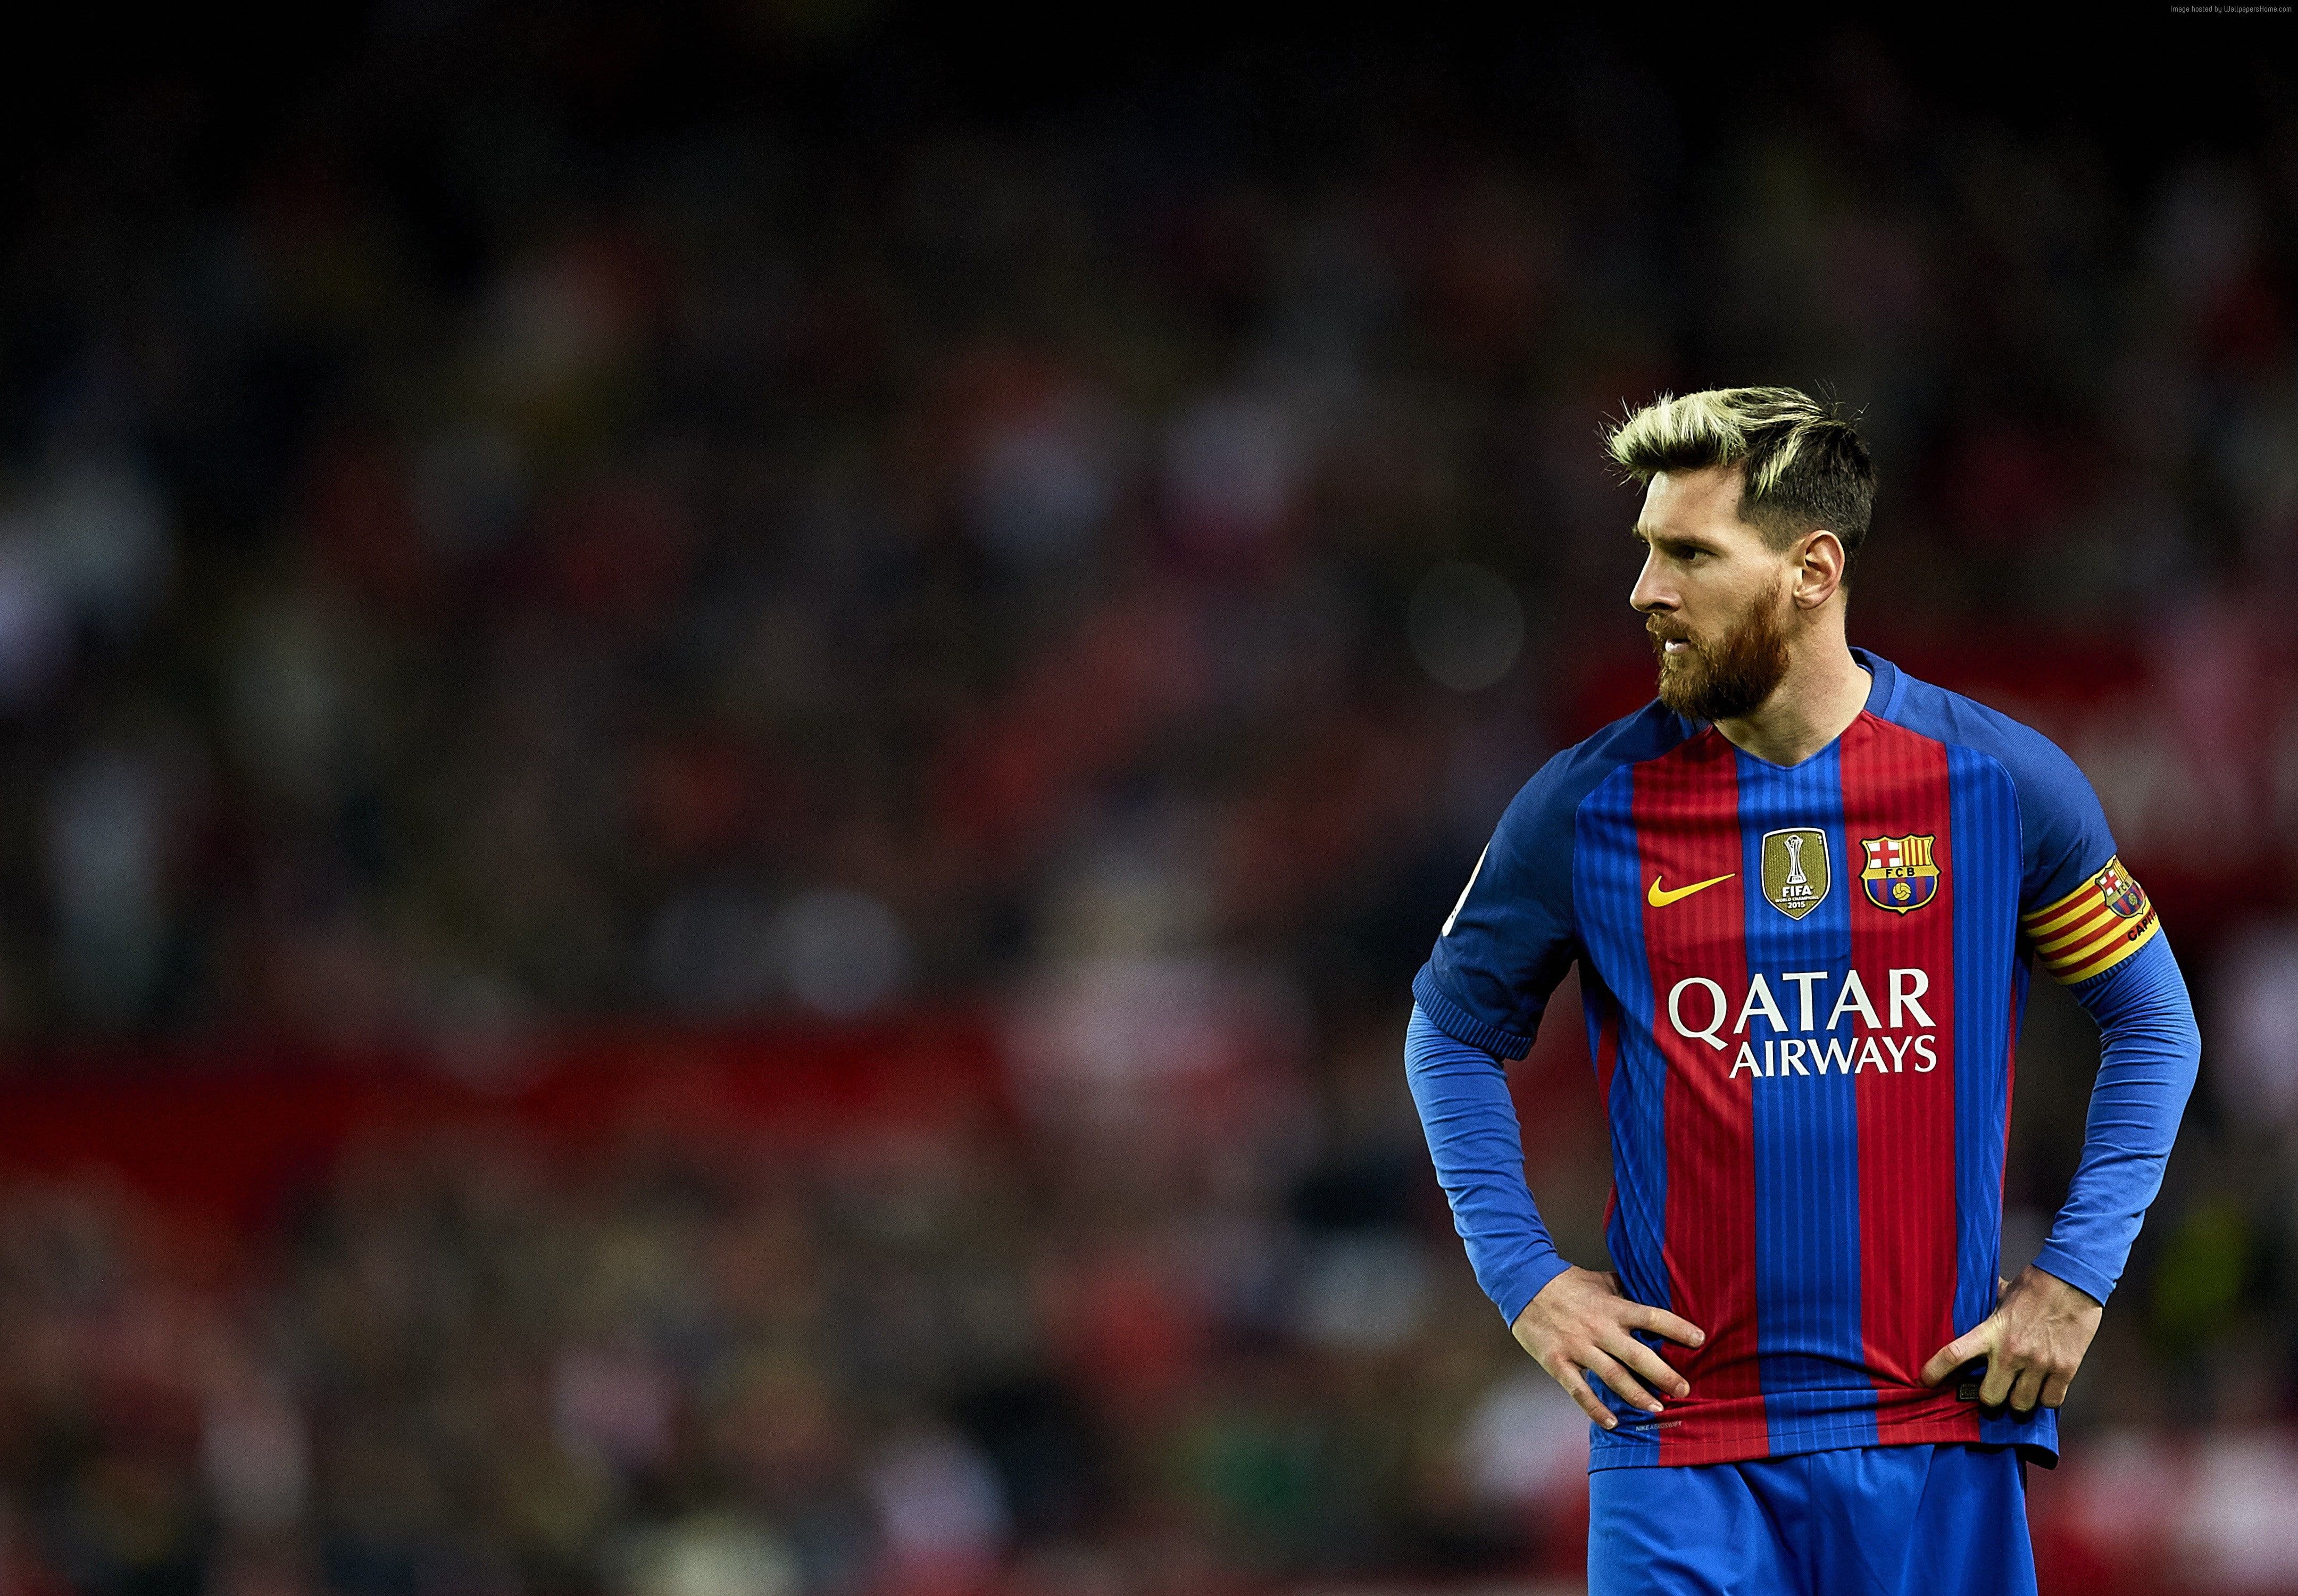 Barcelona K #soccer #FCB Lionel Messi K #wallpaper #hdwallpaper #desktop. Lionel messi wallpaper, Lionel messi, Messi